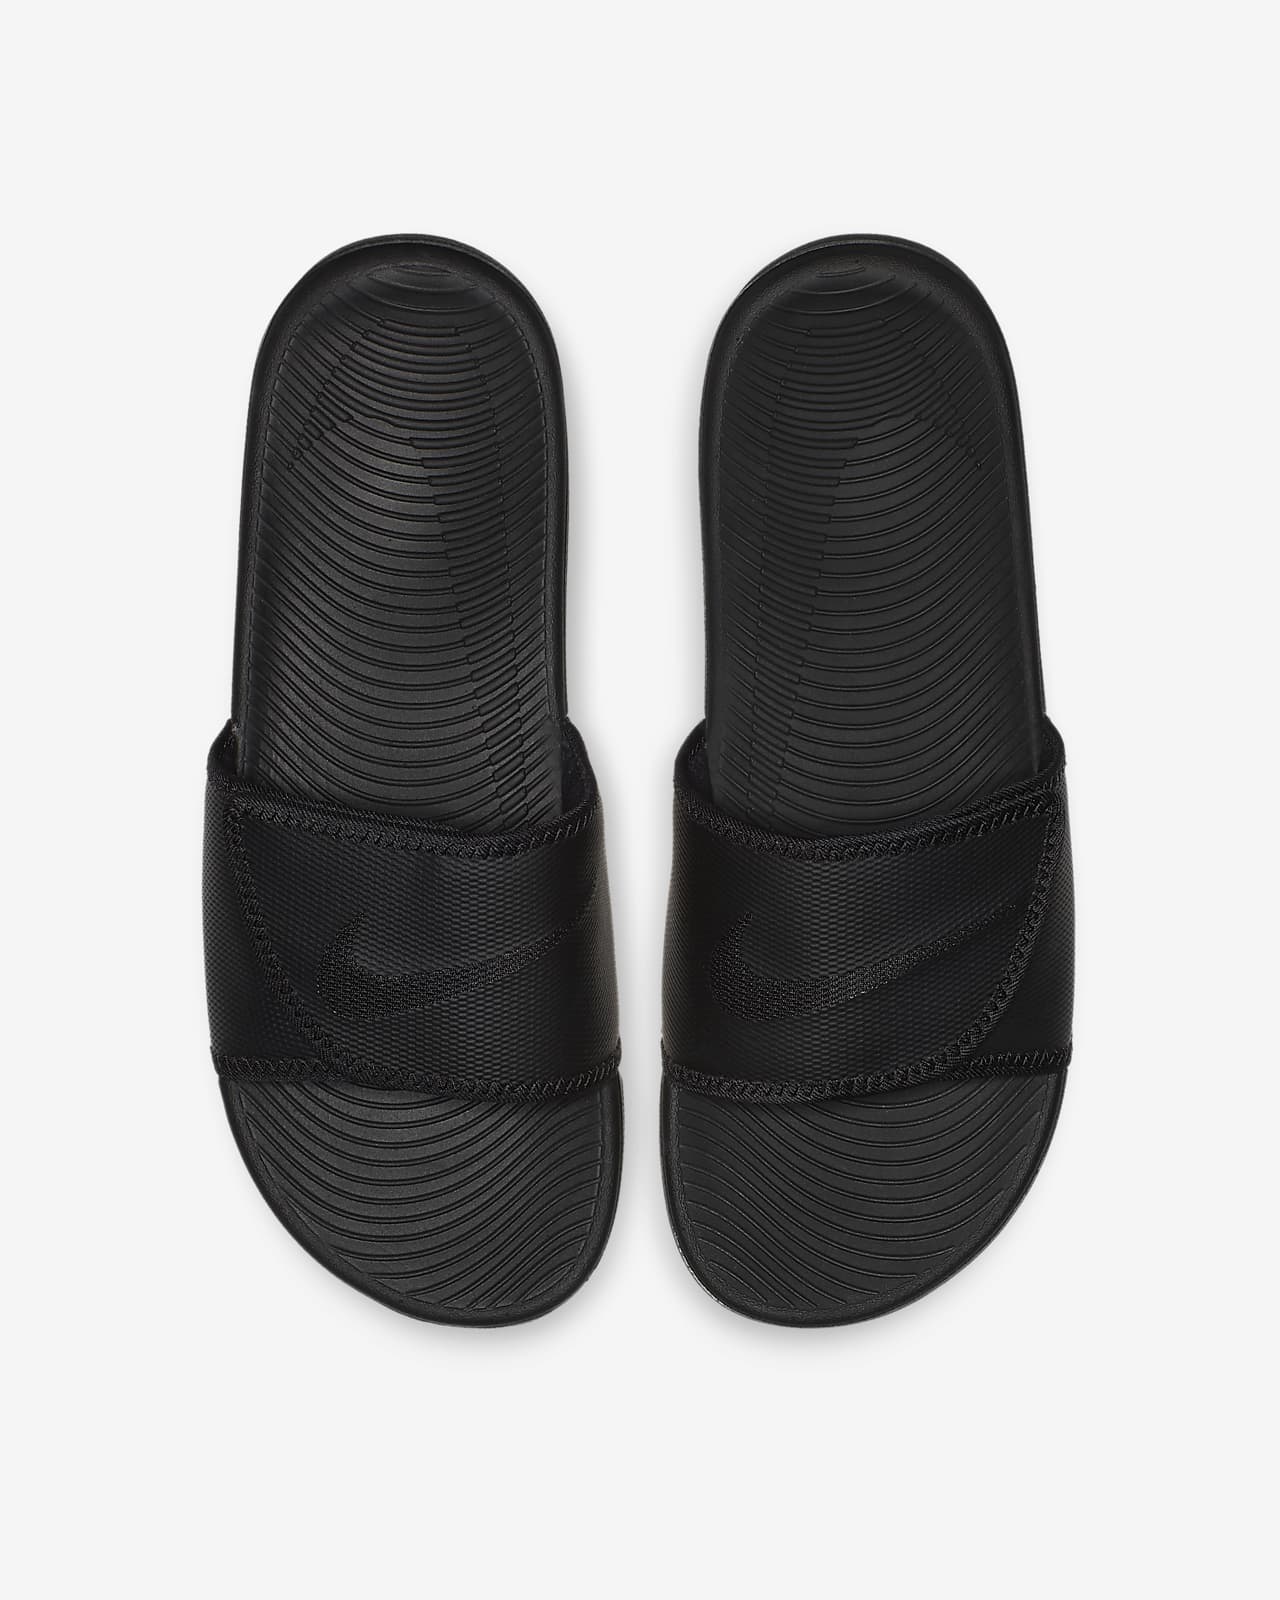 nike kawa adjust men's slide sandals